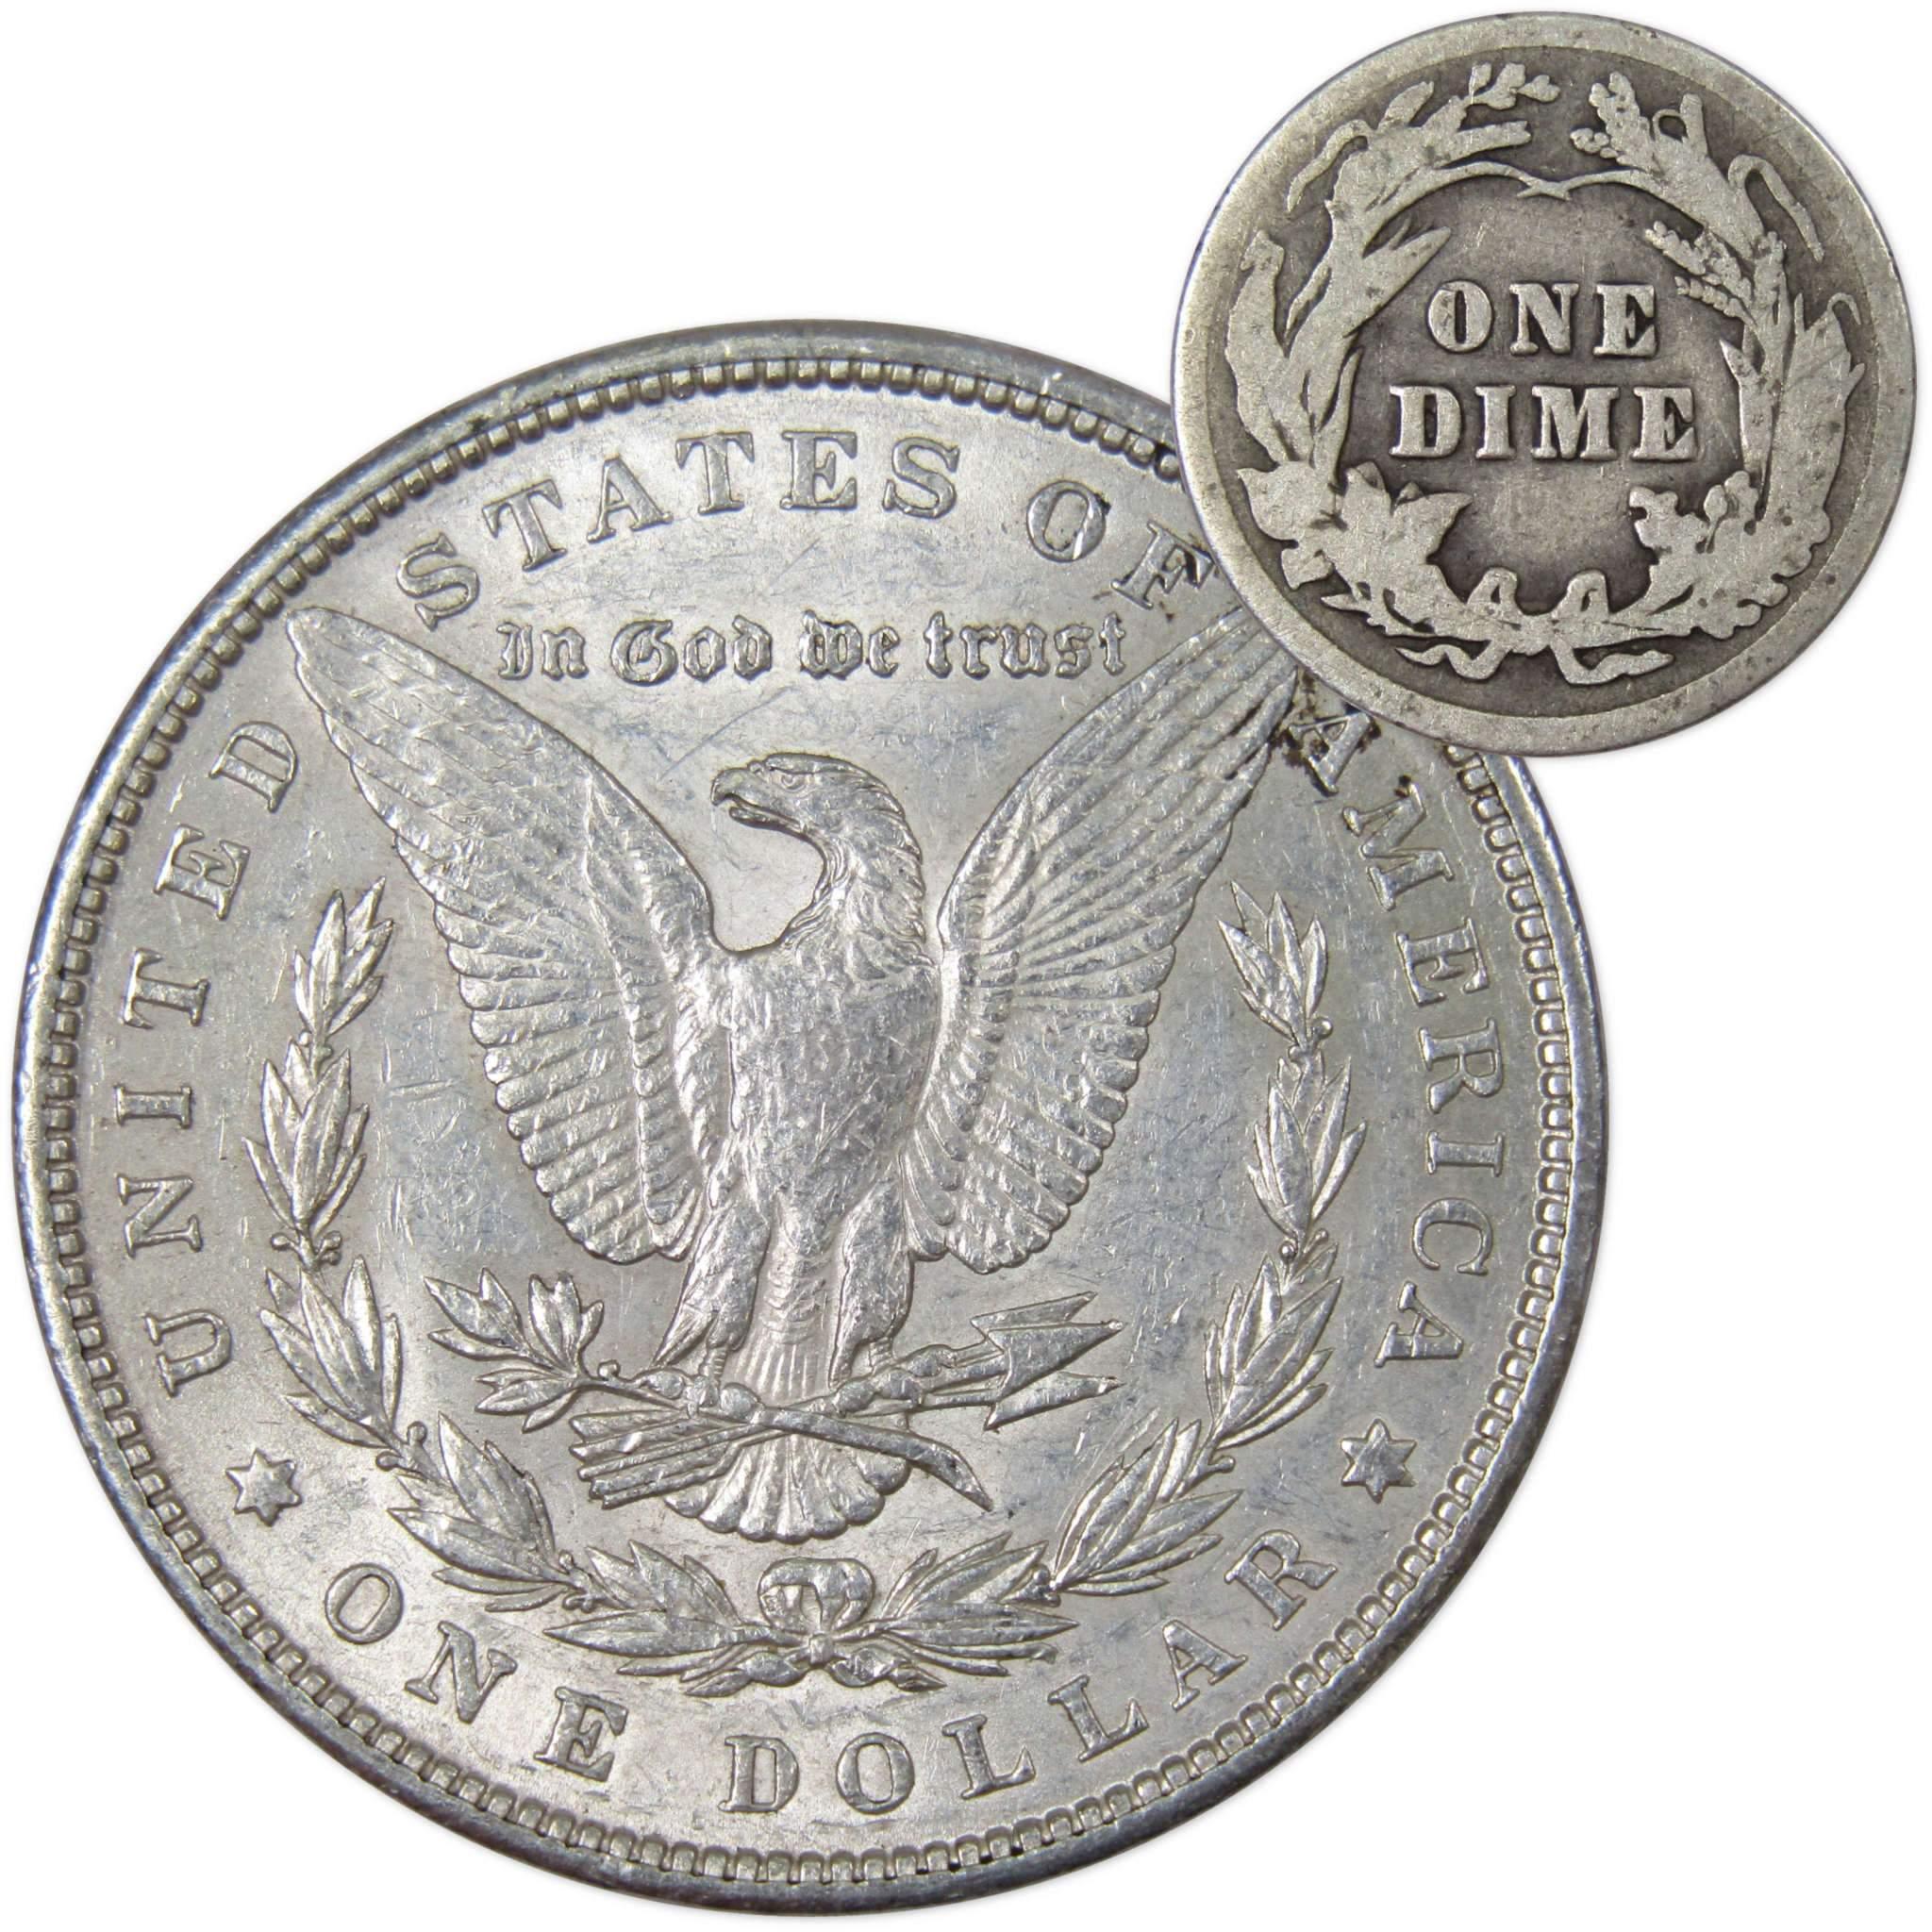 1900 Morgan Dollar XF EF Extremely Fine 90% Silver with 1913 Barber Dime G Good - Morgan coin - Morgan silver dollar - Morgan silver dollar for sale - Profile Coins &amp; Collectibles